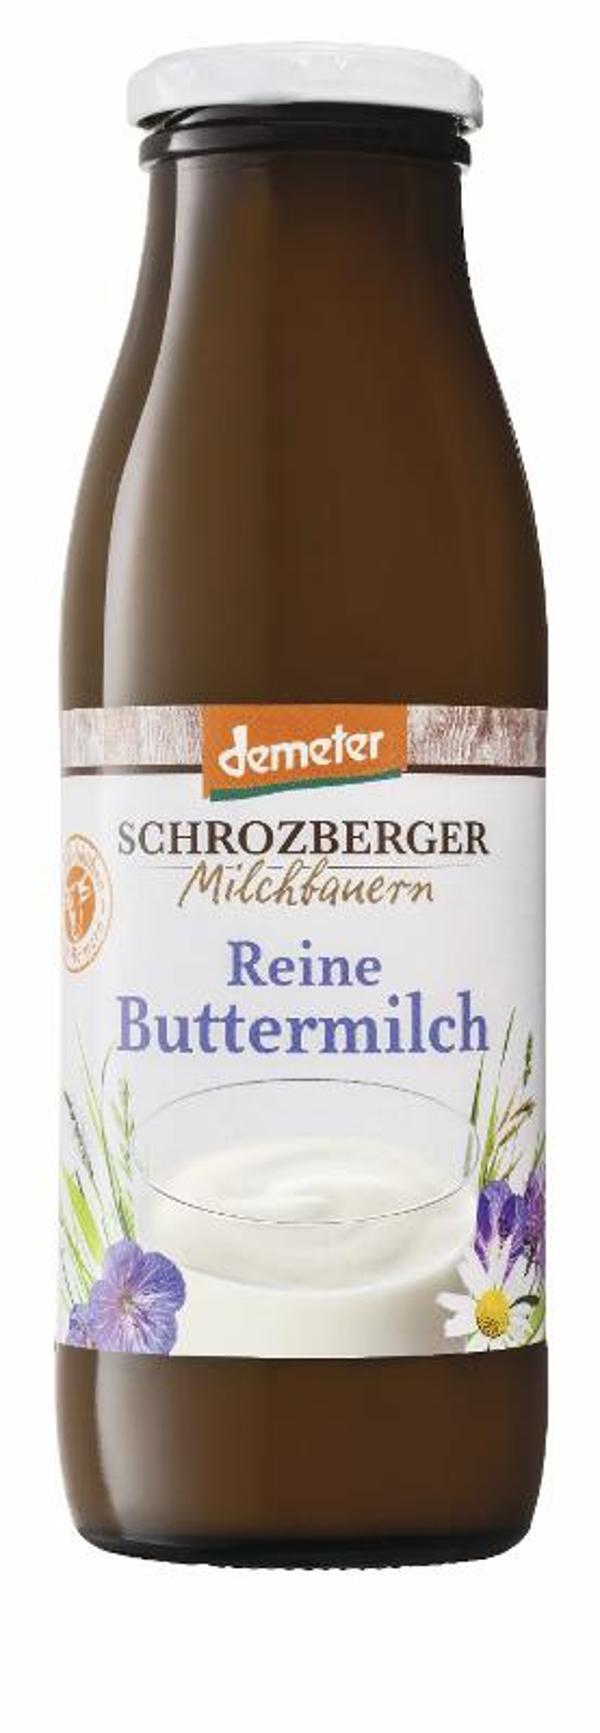 Produktfoto zu Schrozberger Buttermilch - 500g